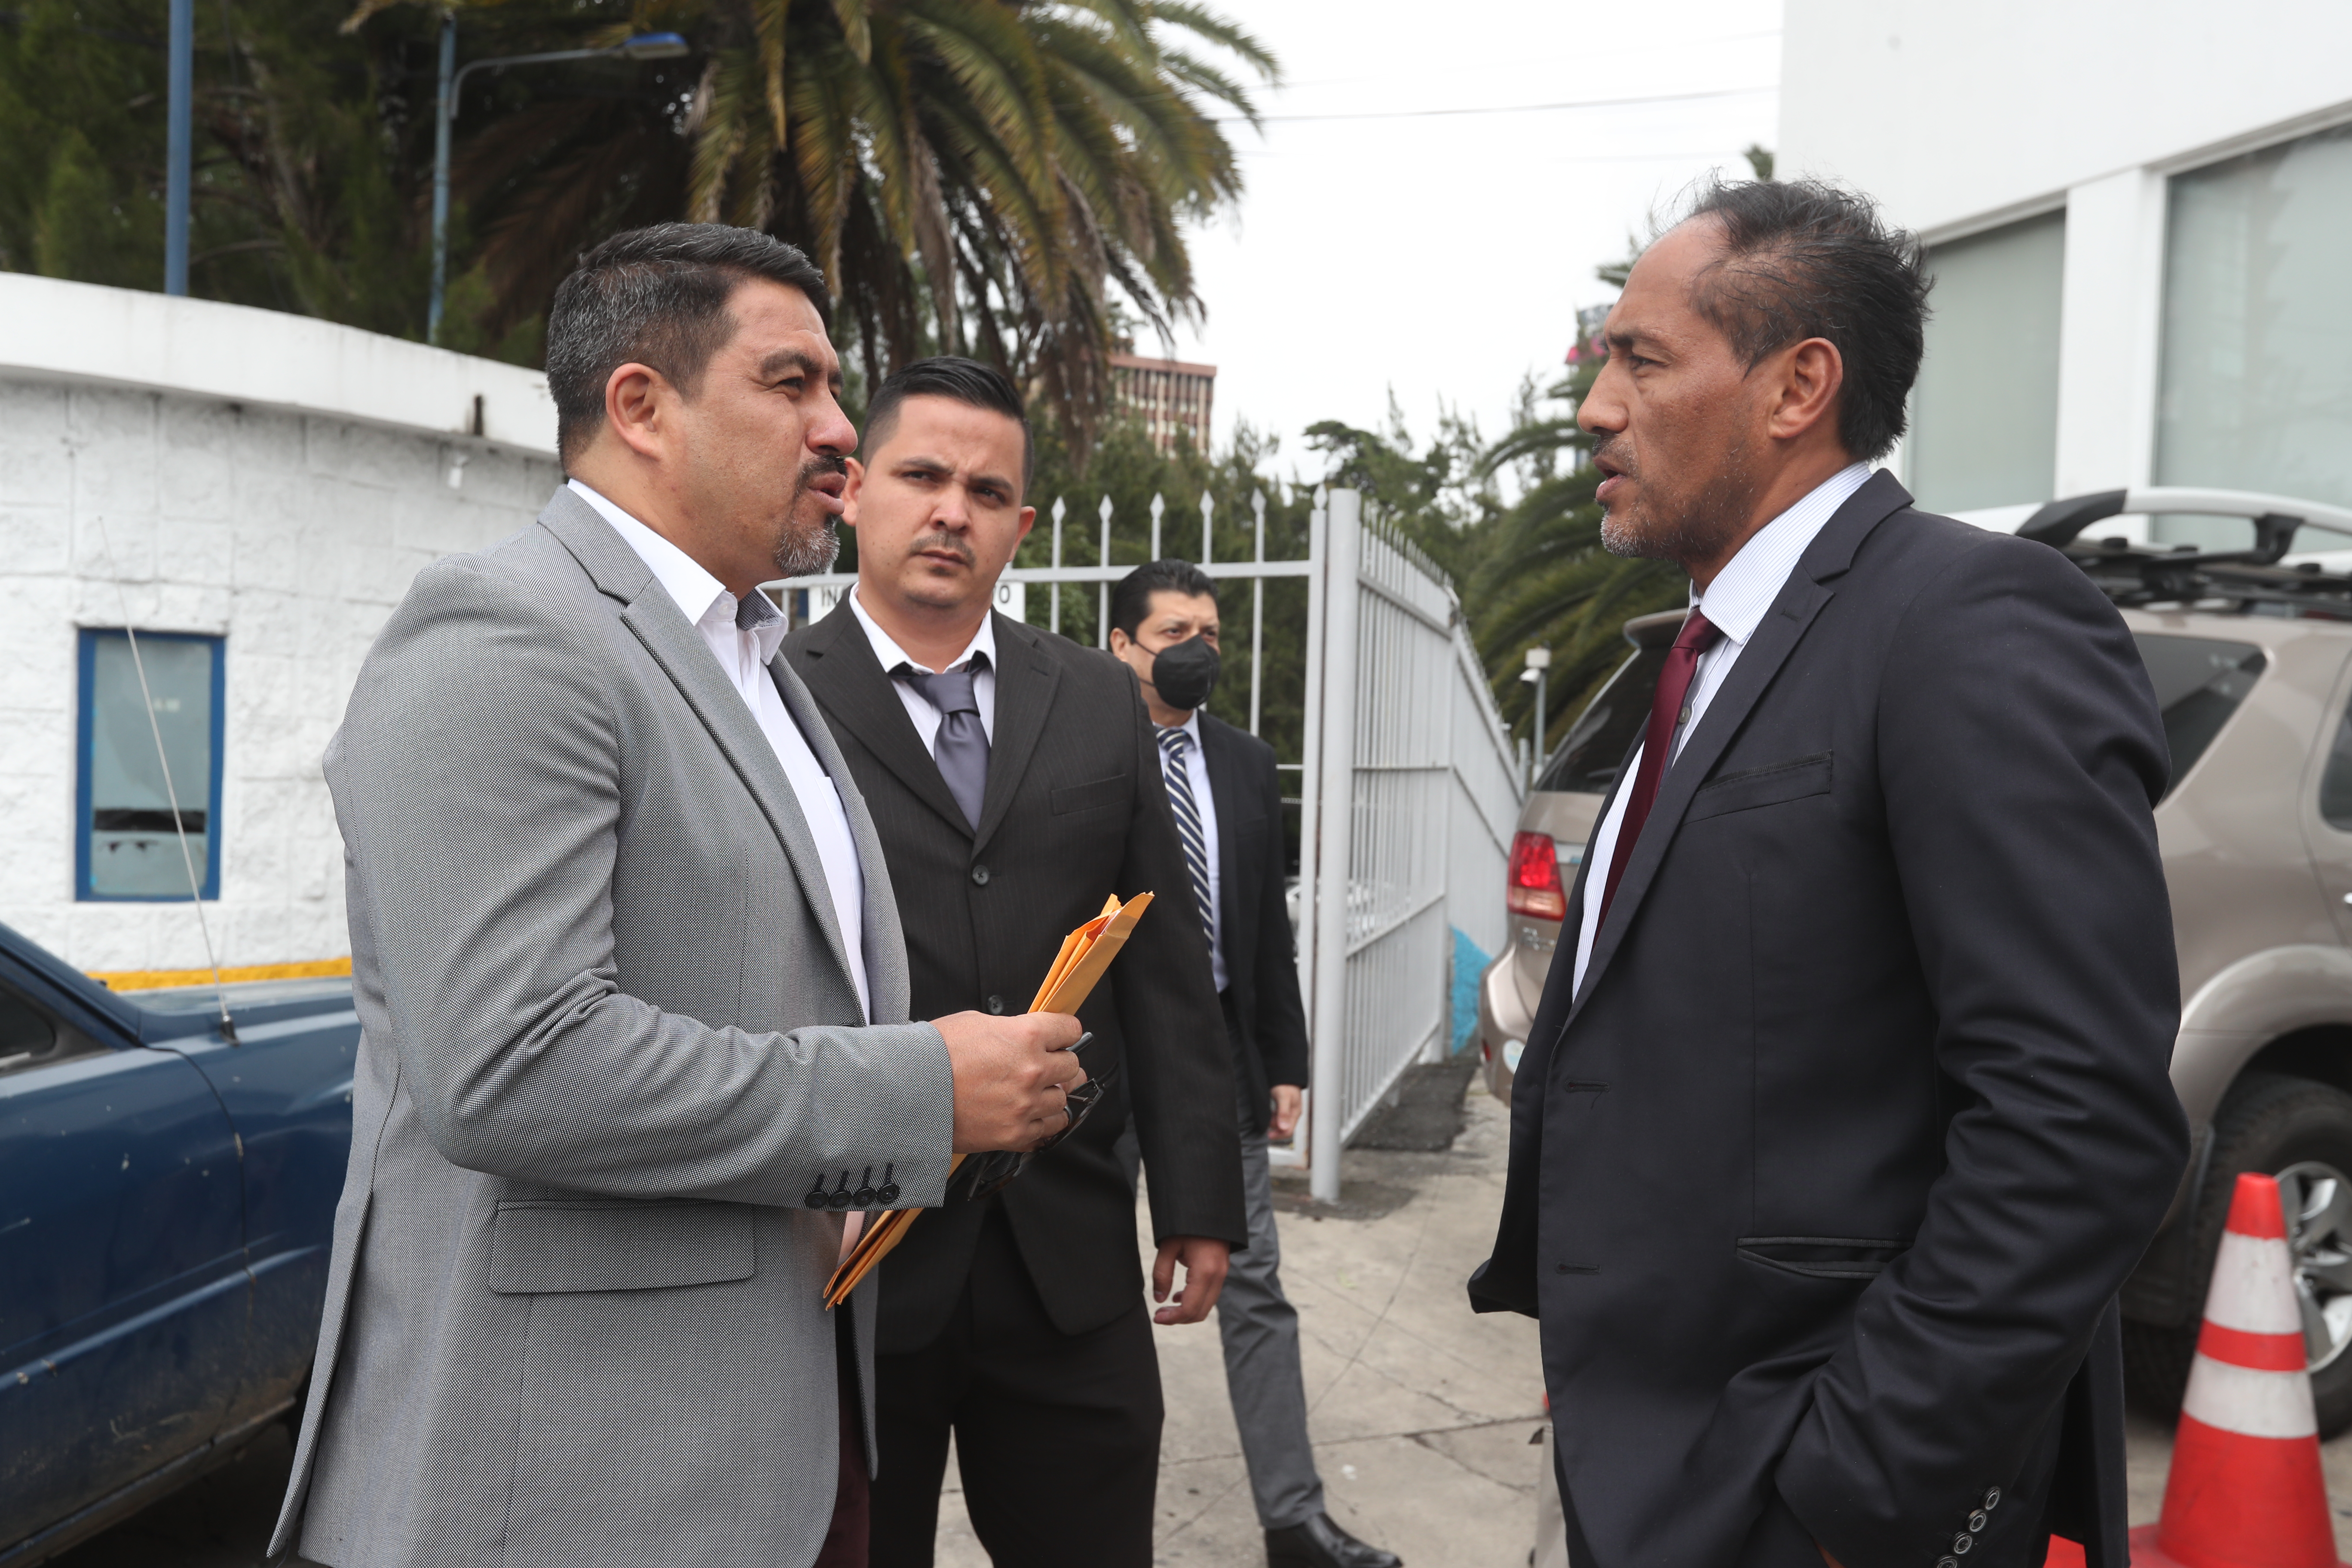 El 7 de noviembre pasado Jorge Rodas y su planilla, integrada por Selvyn Ponciano, entre otros, intentaron tomar posesión del Comité Olímpico Guatemalteco (COG). (Foto Prensa Libre: Erick Ávila)